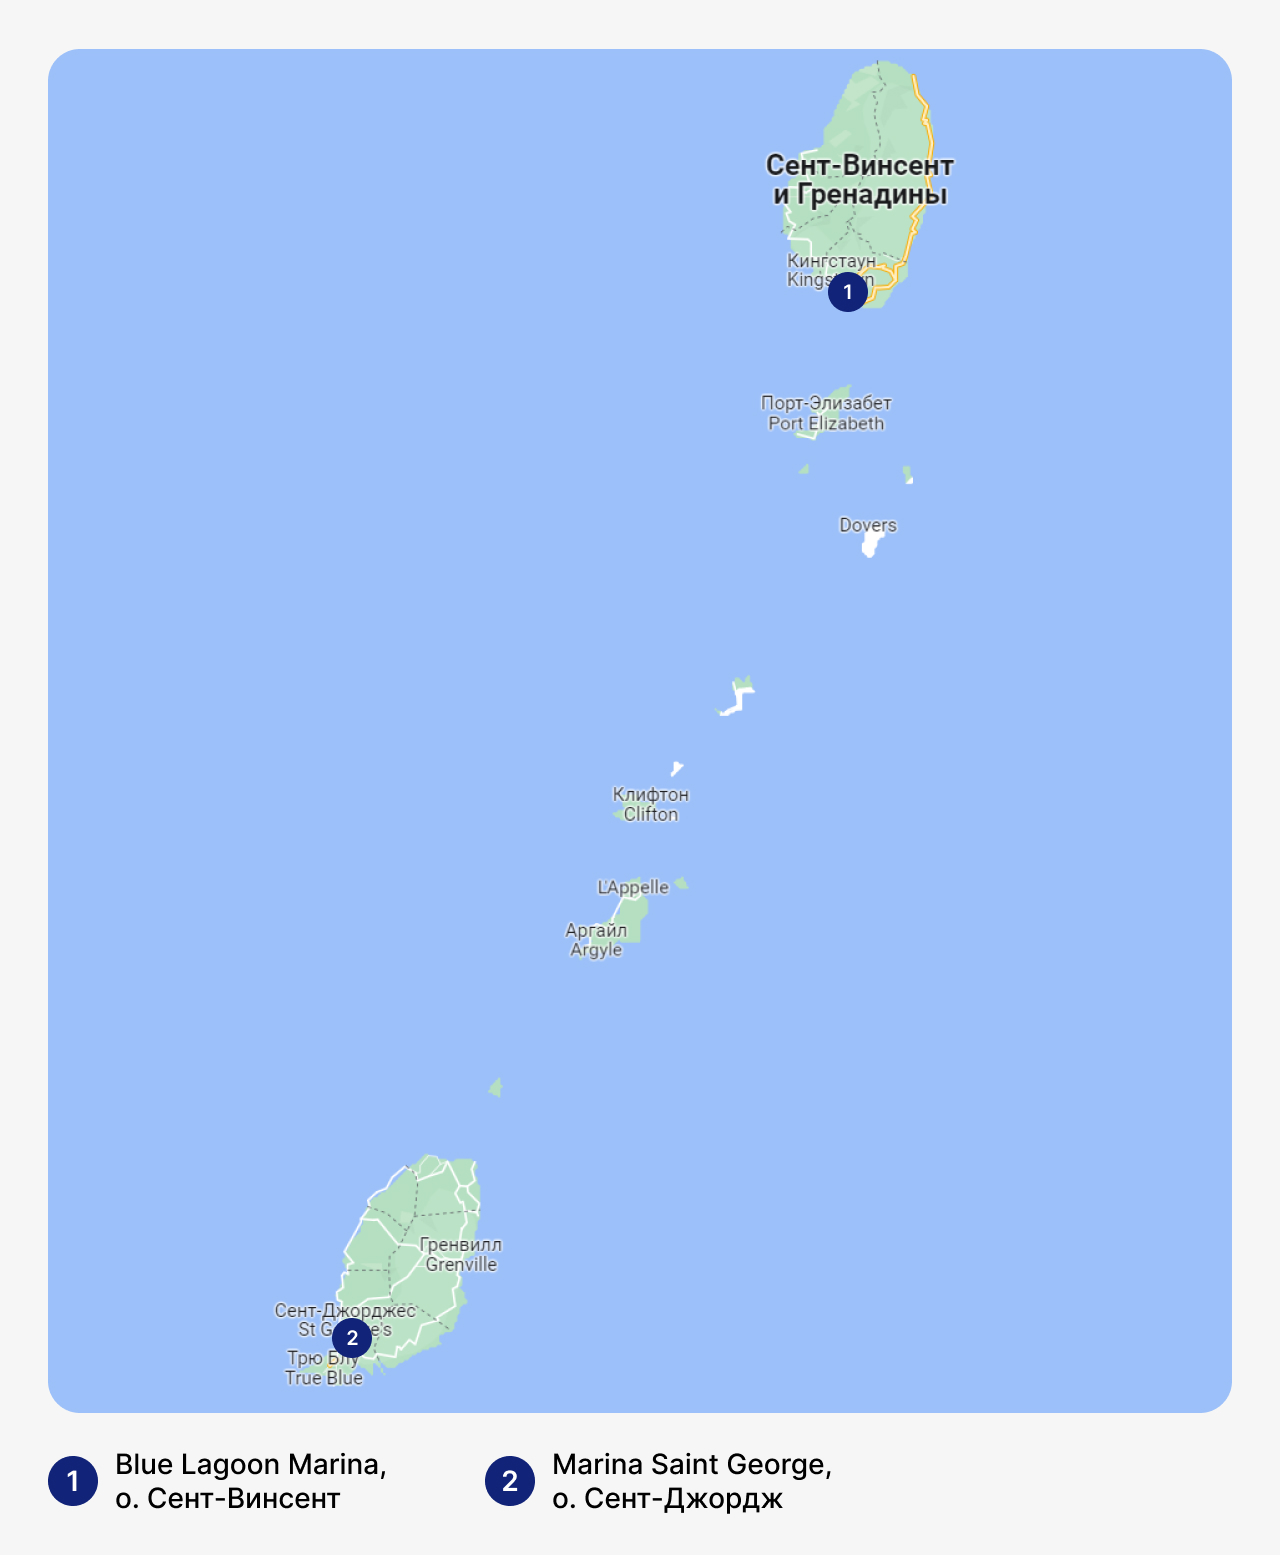 Лучшие марины в Сент-Винсенте и Гренадинах, карта Сент-Винсента и Гренадин с маринами, стоянка для яхт в Сент-Винсенте и Гренадинах, где хранить яхты в Сент-Винсенте и Гренадинах